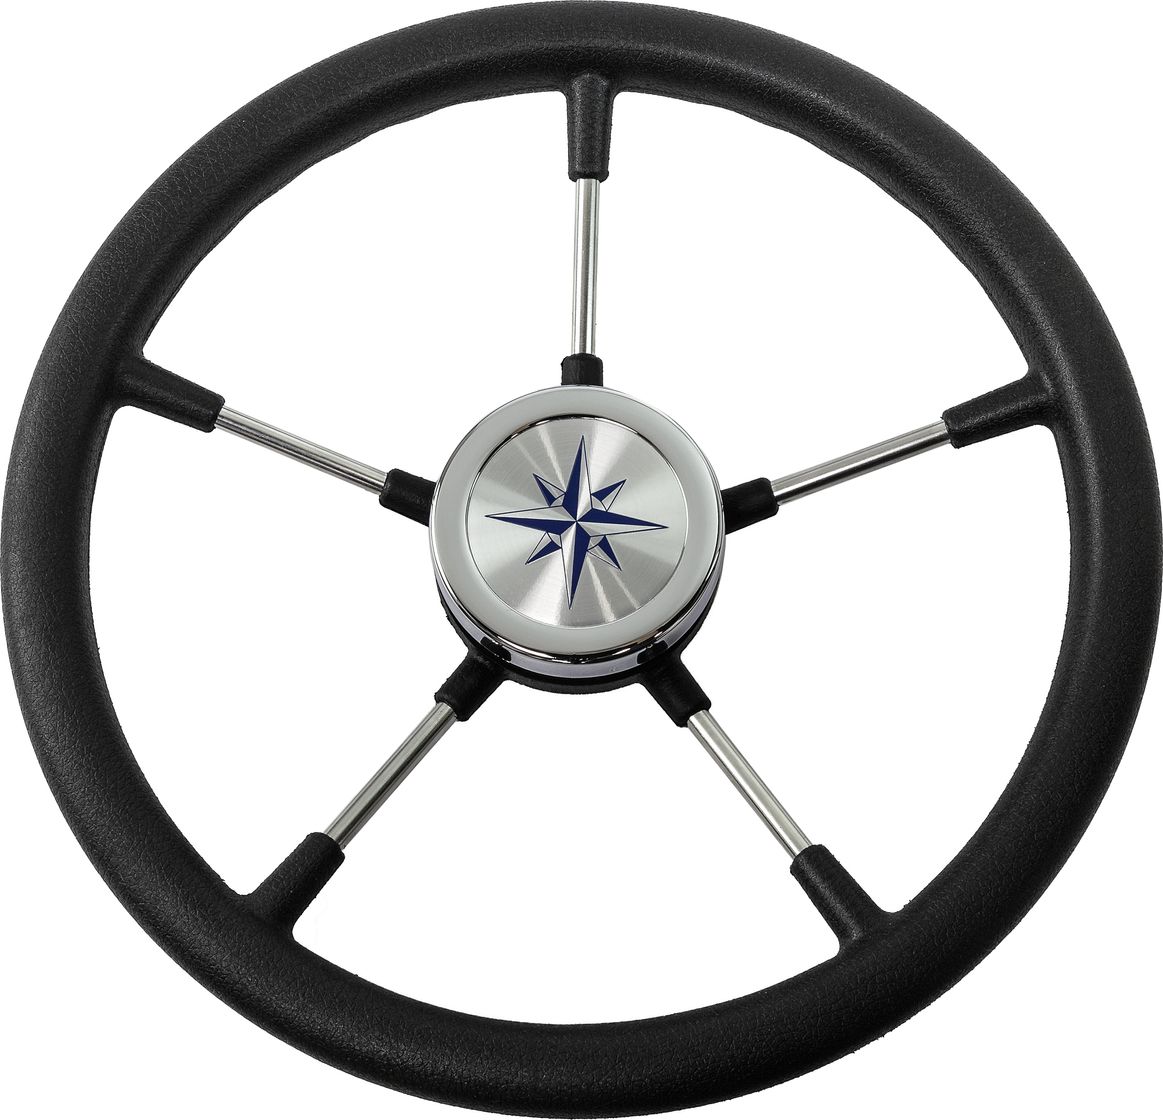 Рулевое колесо RIVA RSL обод черный, спицы серебряные д. 360 мм VN735022-01 рулевое колесо riva rsl обод серый спицы серебряные д 360 мм vn735022 03